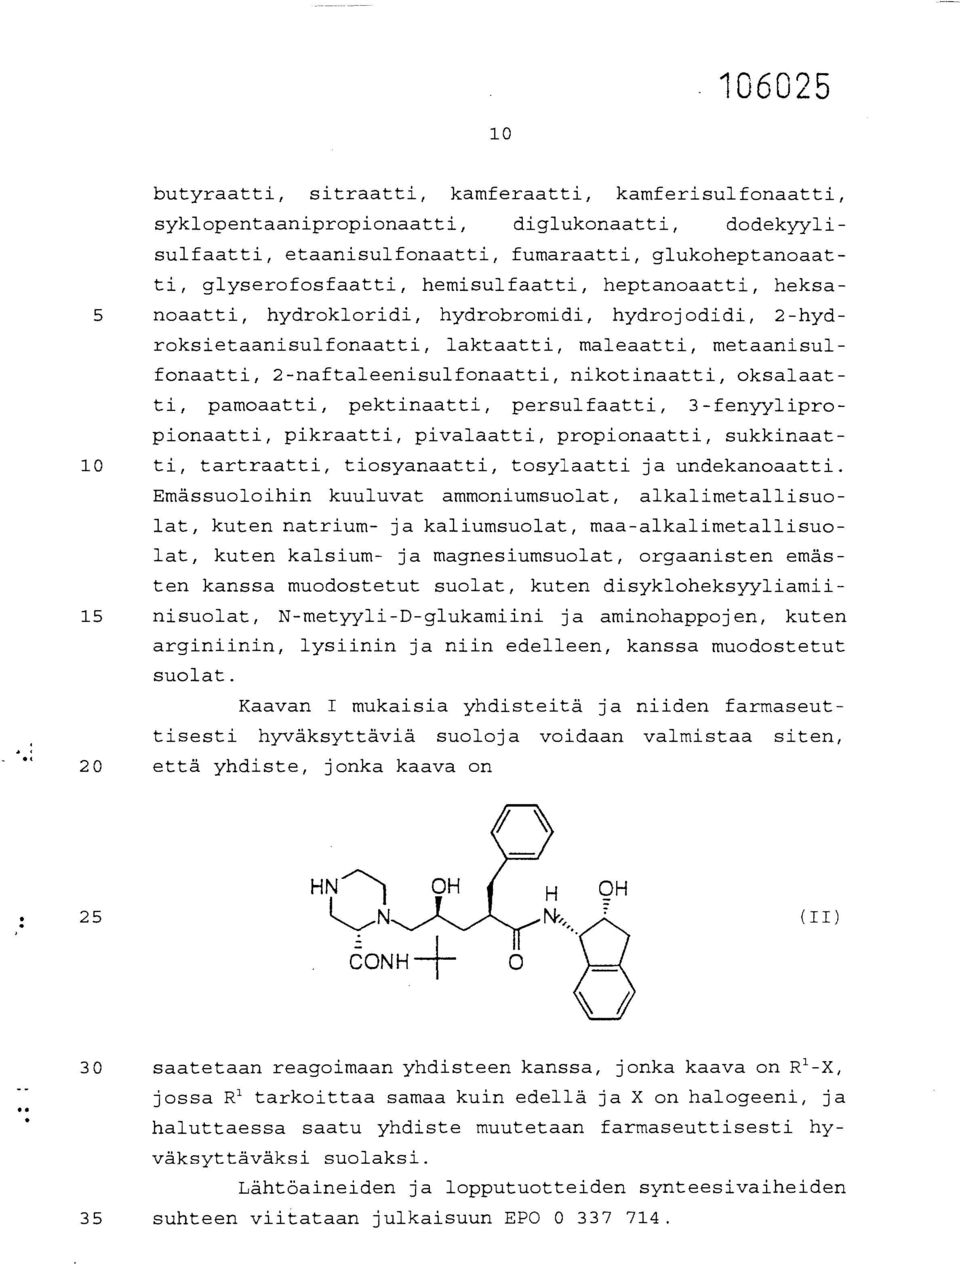 oksalaatti, pamoaatti, pektinaatti, persulfaatti, 3-fenyylipropionaatti, pikraatti, pivalaatti, propionaatti, sukkinaat- 10 ti, tartraatti, tiosyanaatti, tosylaatti ja undekanoaatti.